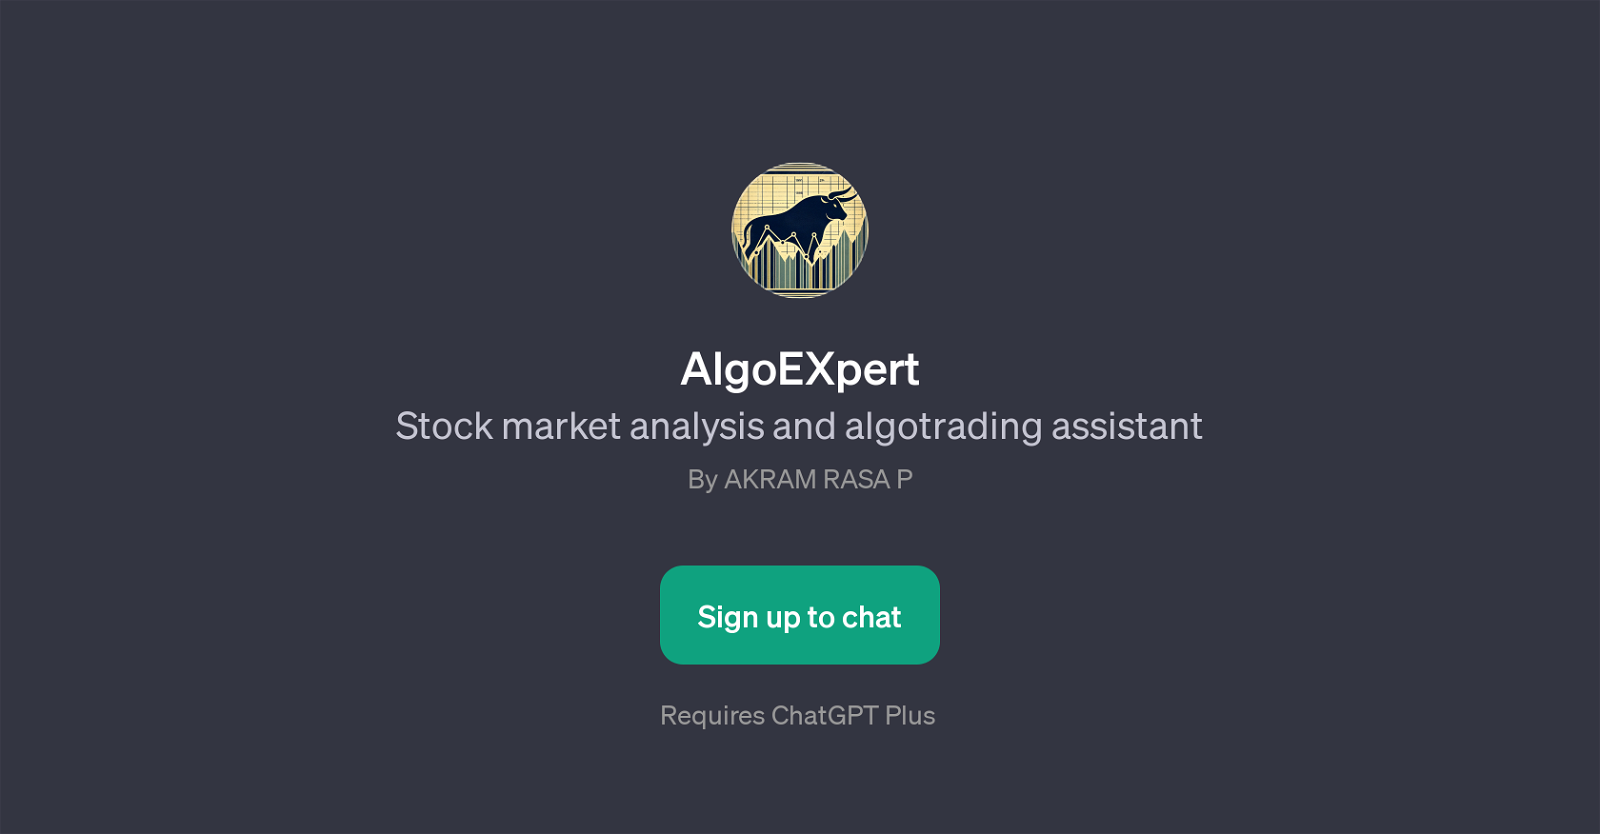 AlgoEXpert website